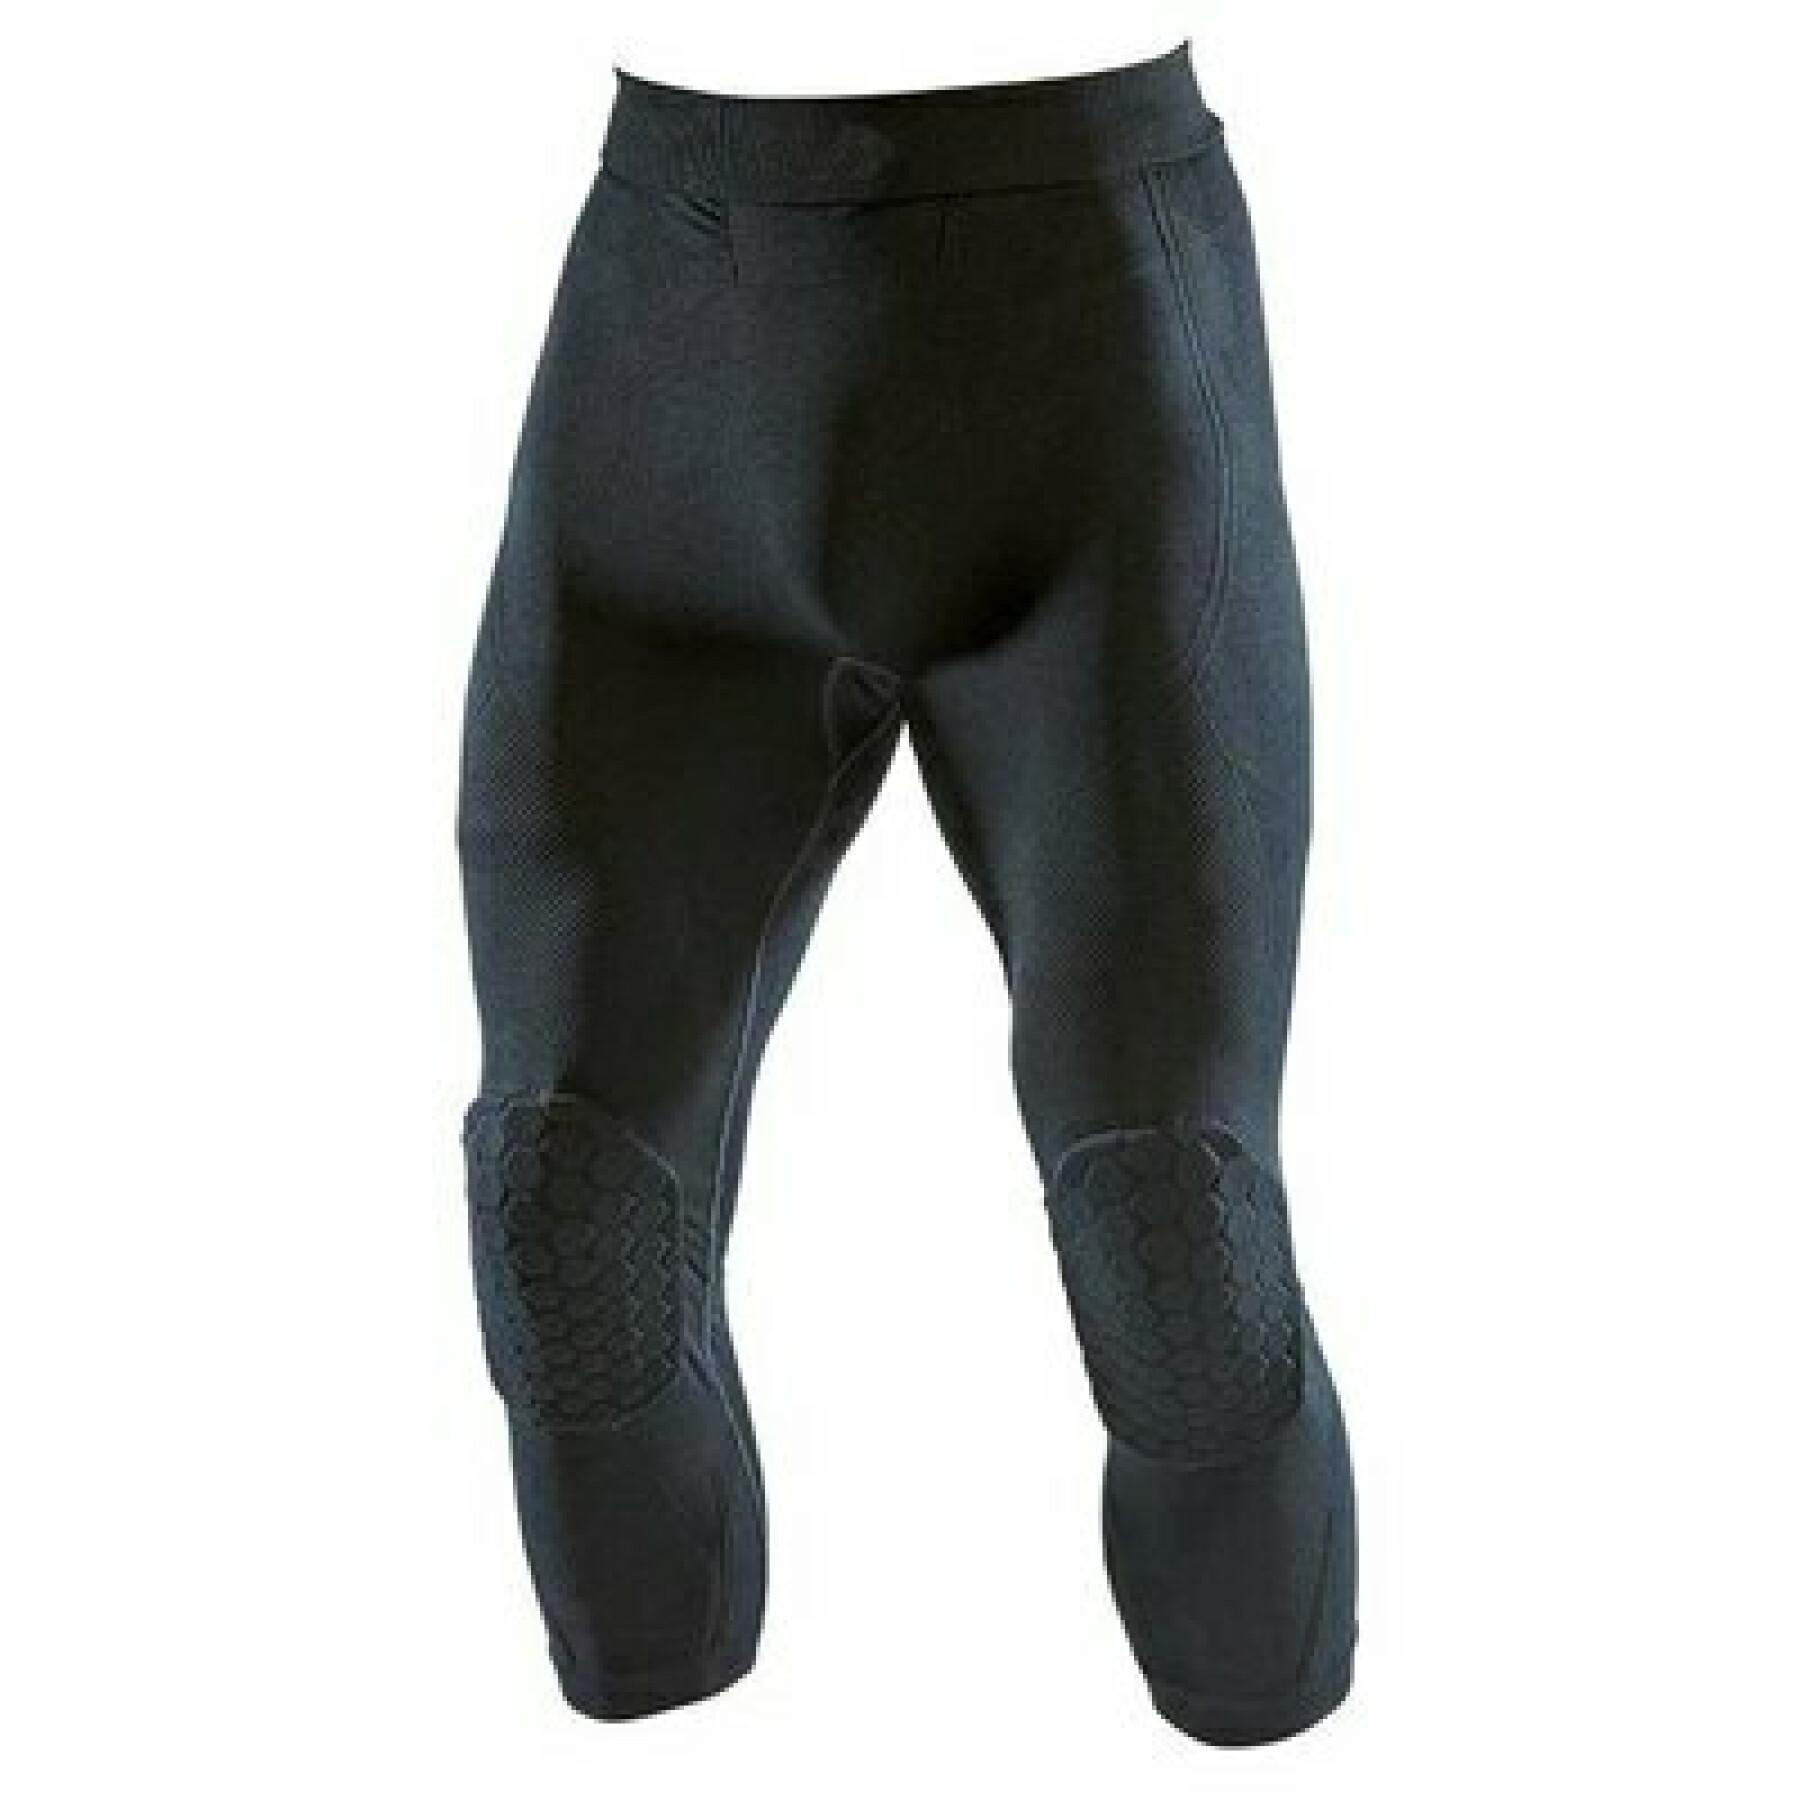 Pantalon de compresion 3/4 Elite McDavid Hex 2-pad protège-genoux